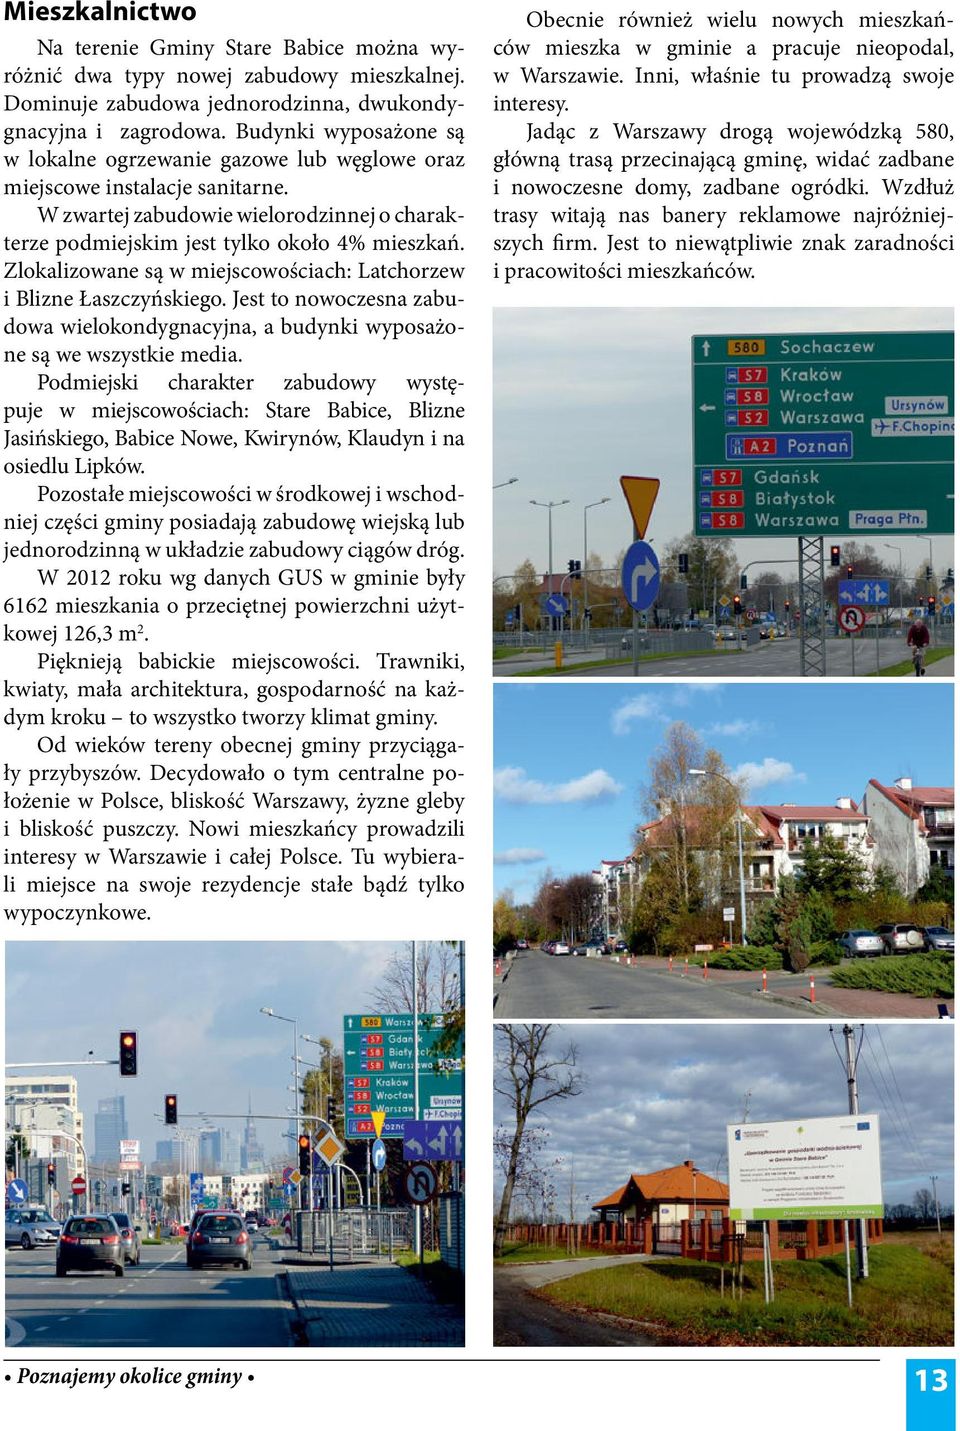 Zlokalizowane są w miejscowościach: Latchorzew i Blizne Łaszczyńskiego. Jest to nowoczesna zabudowa wielokondygnacyjna, a budynki wyposażone są we wszystkie media.